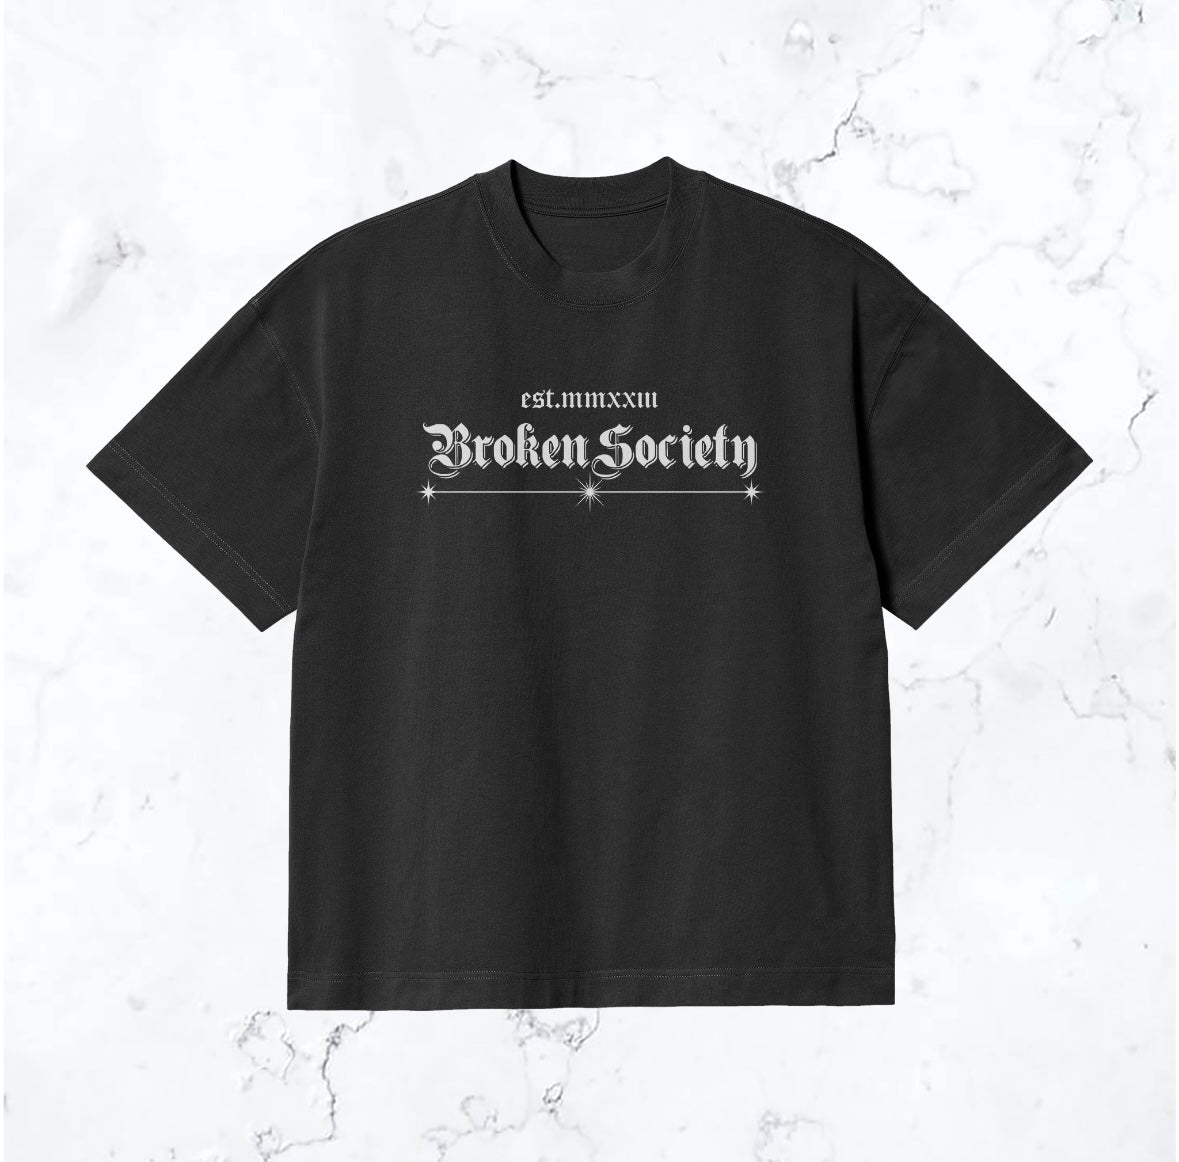 Broken Society “Saint Vs Sinner” Tee